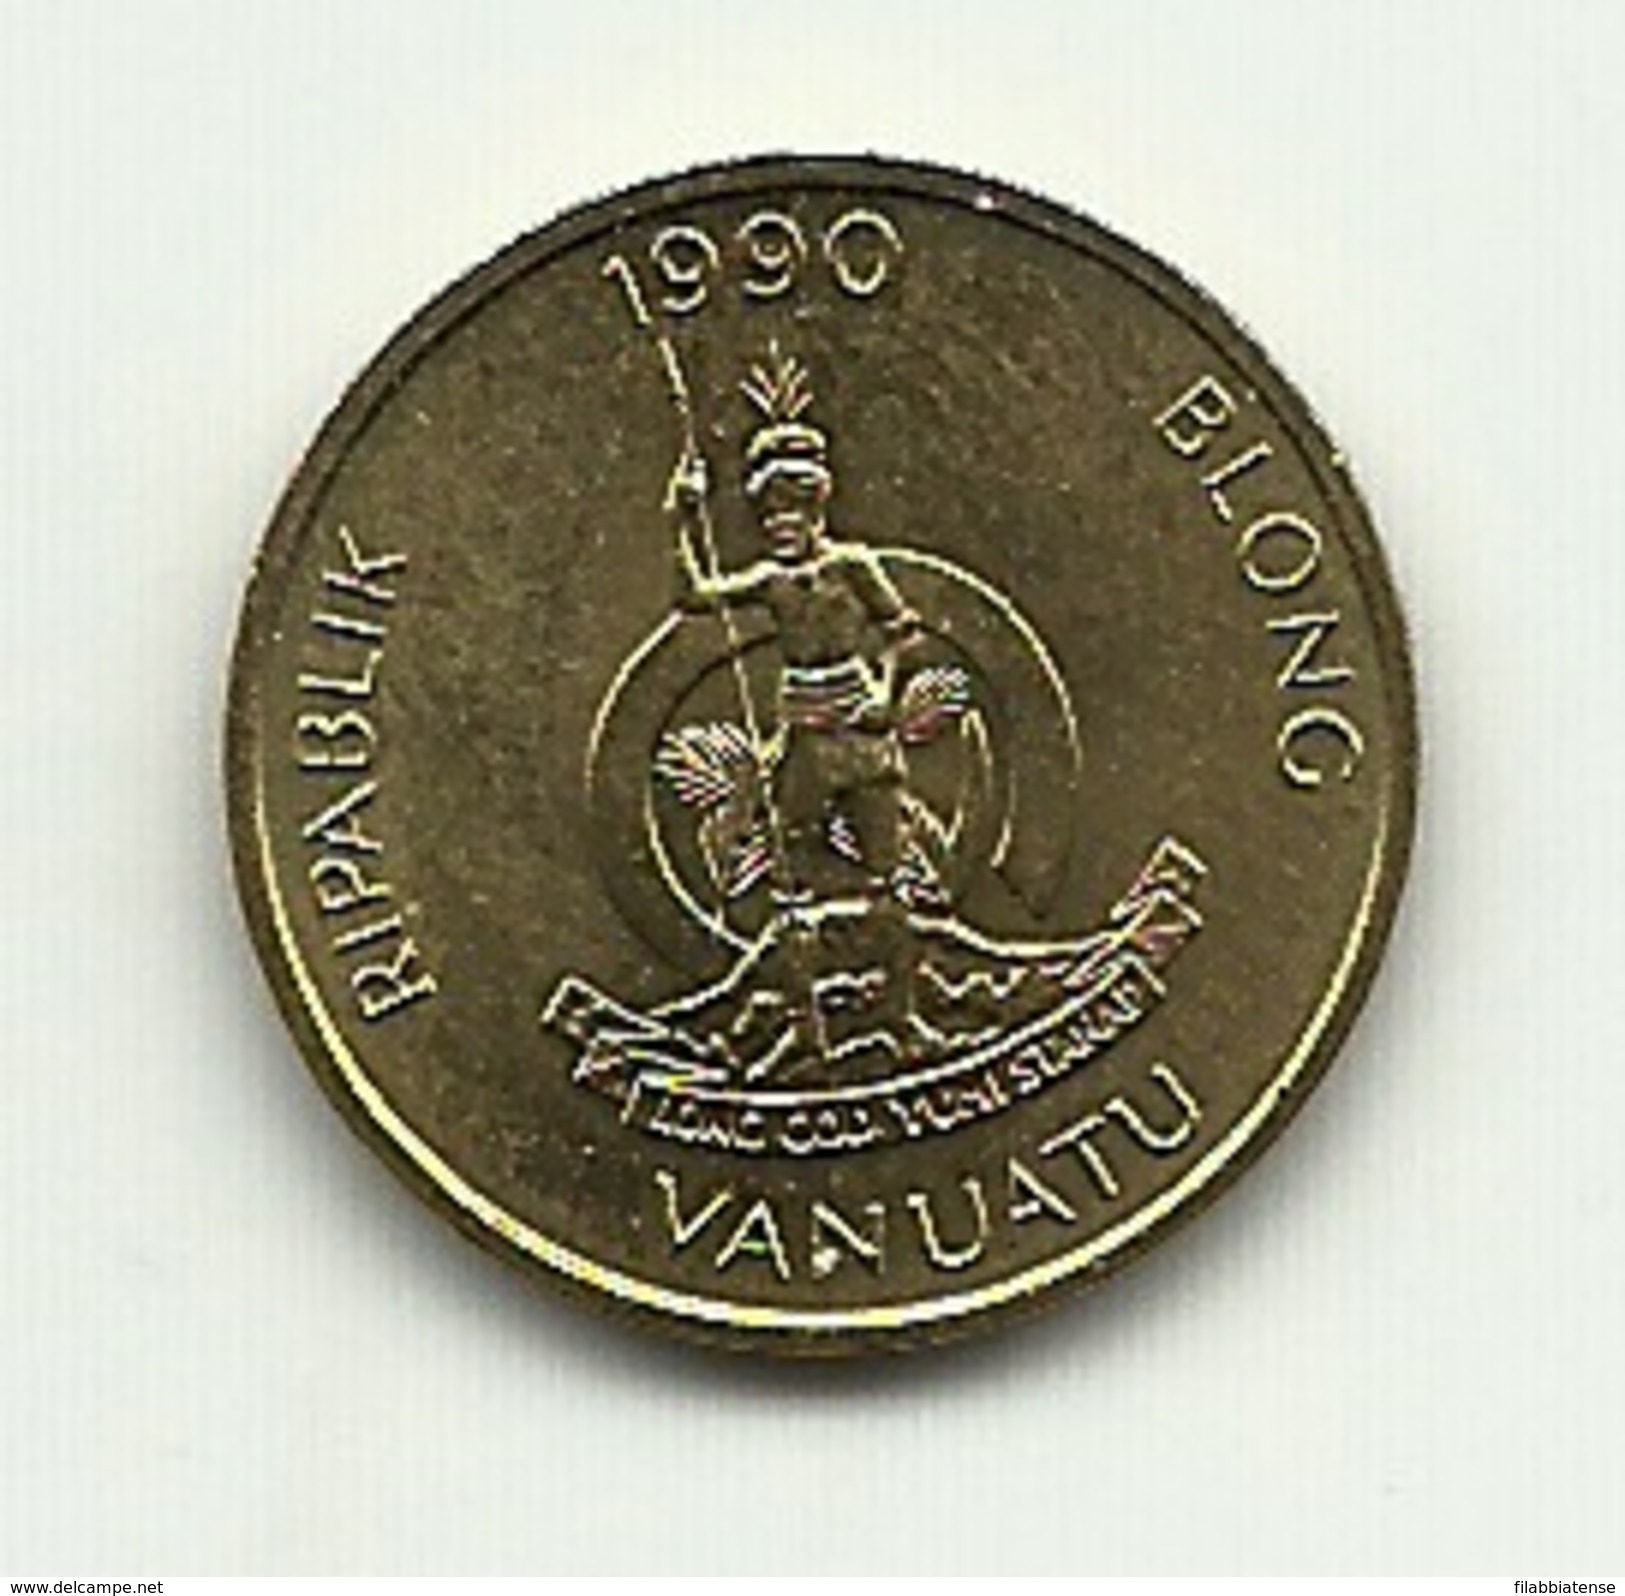 1990 - Vanuatu 1 Vatu - Vanuatu